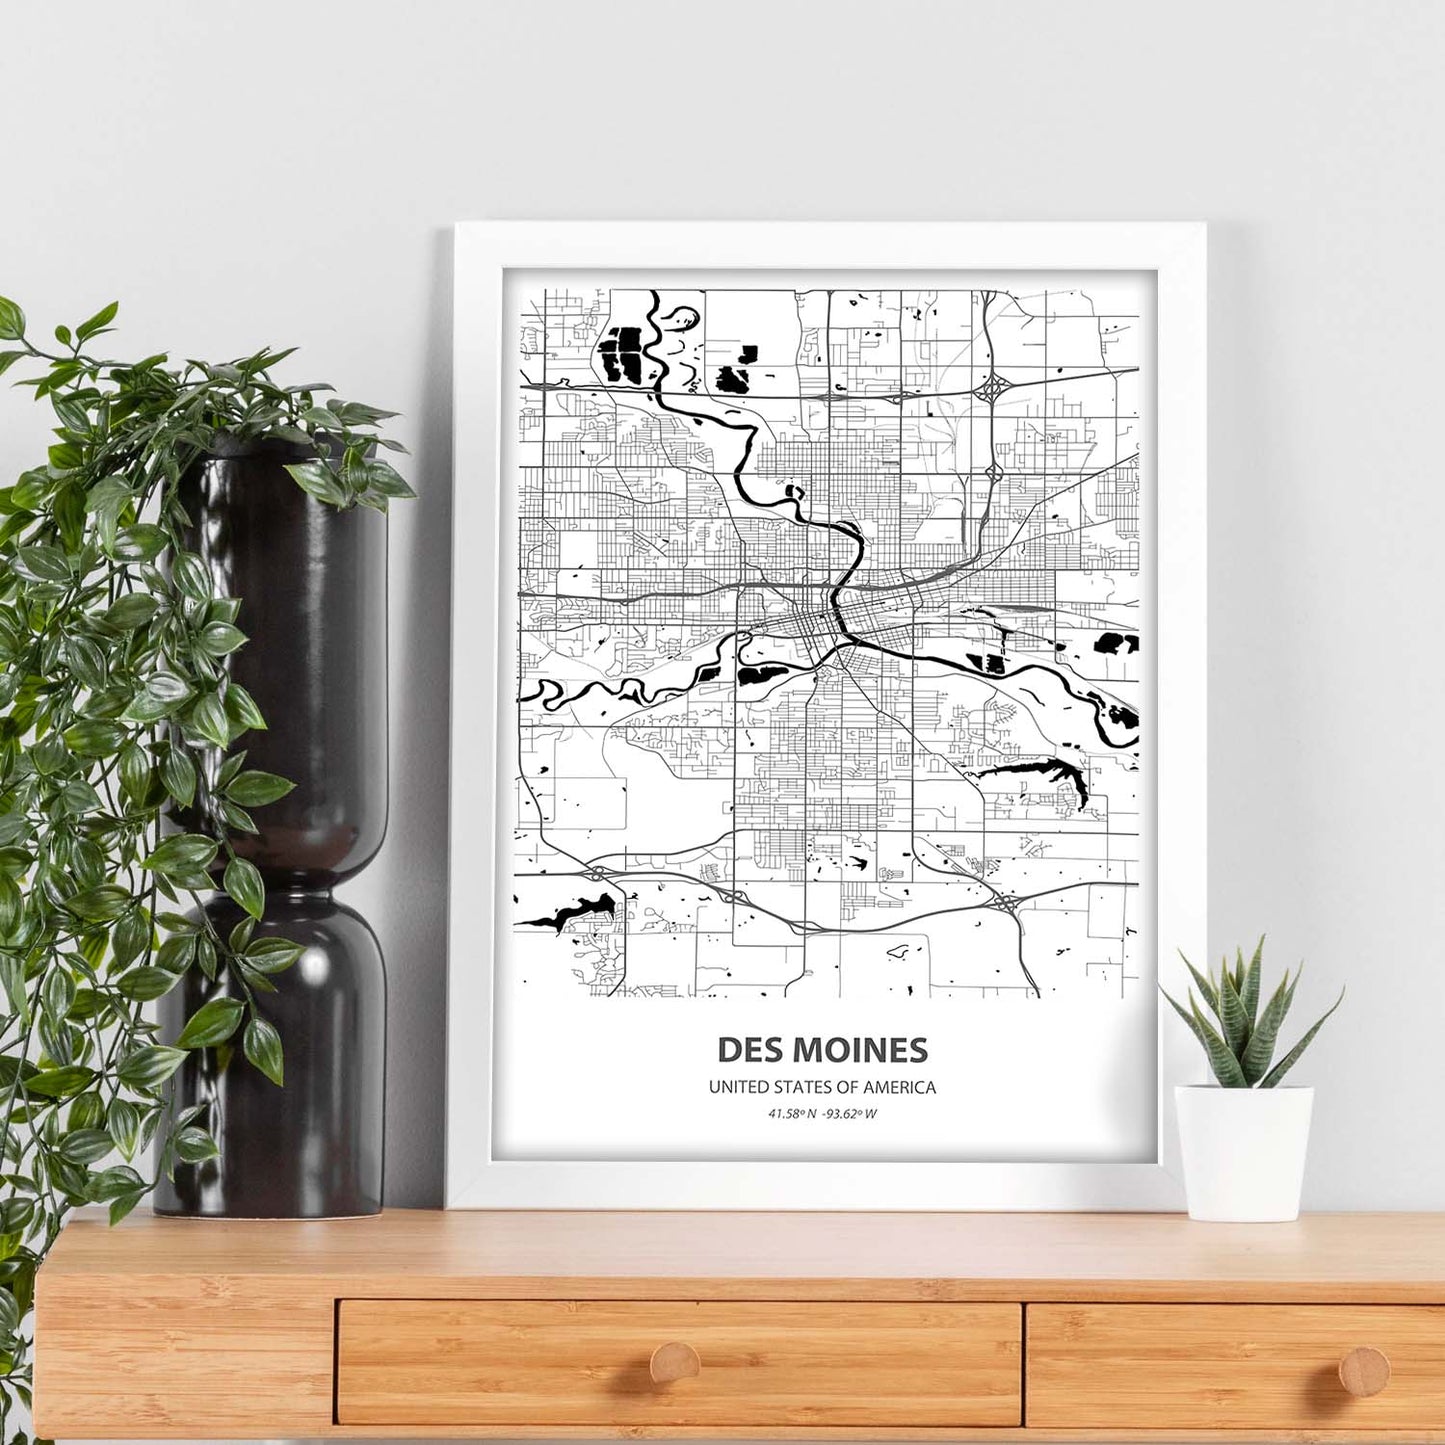 Poster con mapa de Des Mondes - USA. Láminas de ciudades de Estados Unidos con mares y ríos en color negro.-Artwork-Nacnic-Nacnic Estudio SL